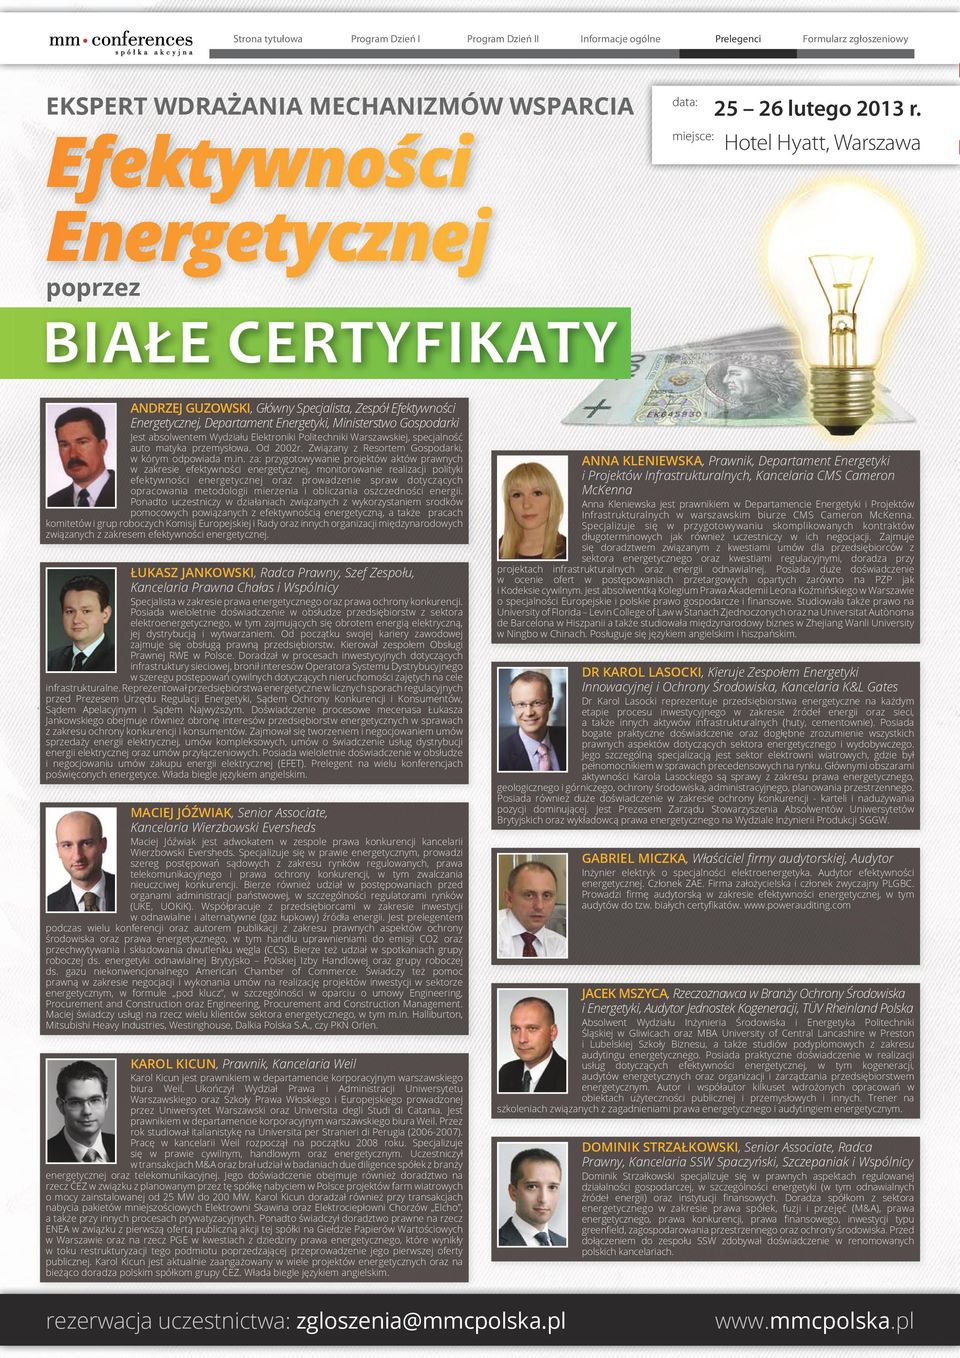 za: przygotowywanie projektów aktów prawnych w zakresie efektywności energetycznej, monitorowanie realizacji polityki efektywności energetycznej oraz prowadzenie spraw dotyczących opracowania